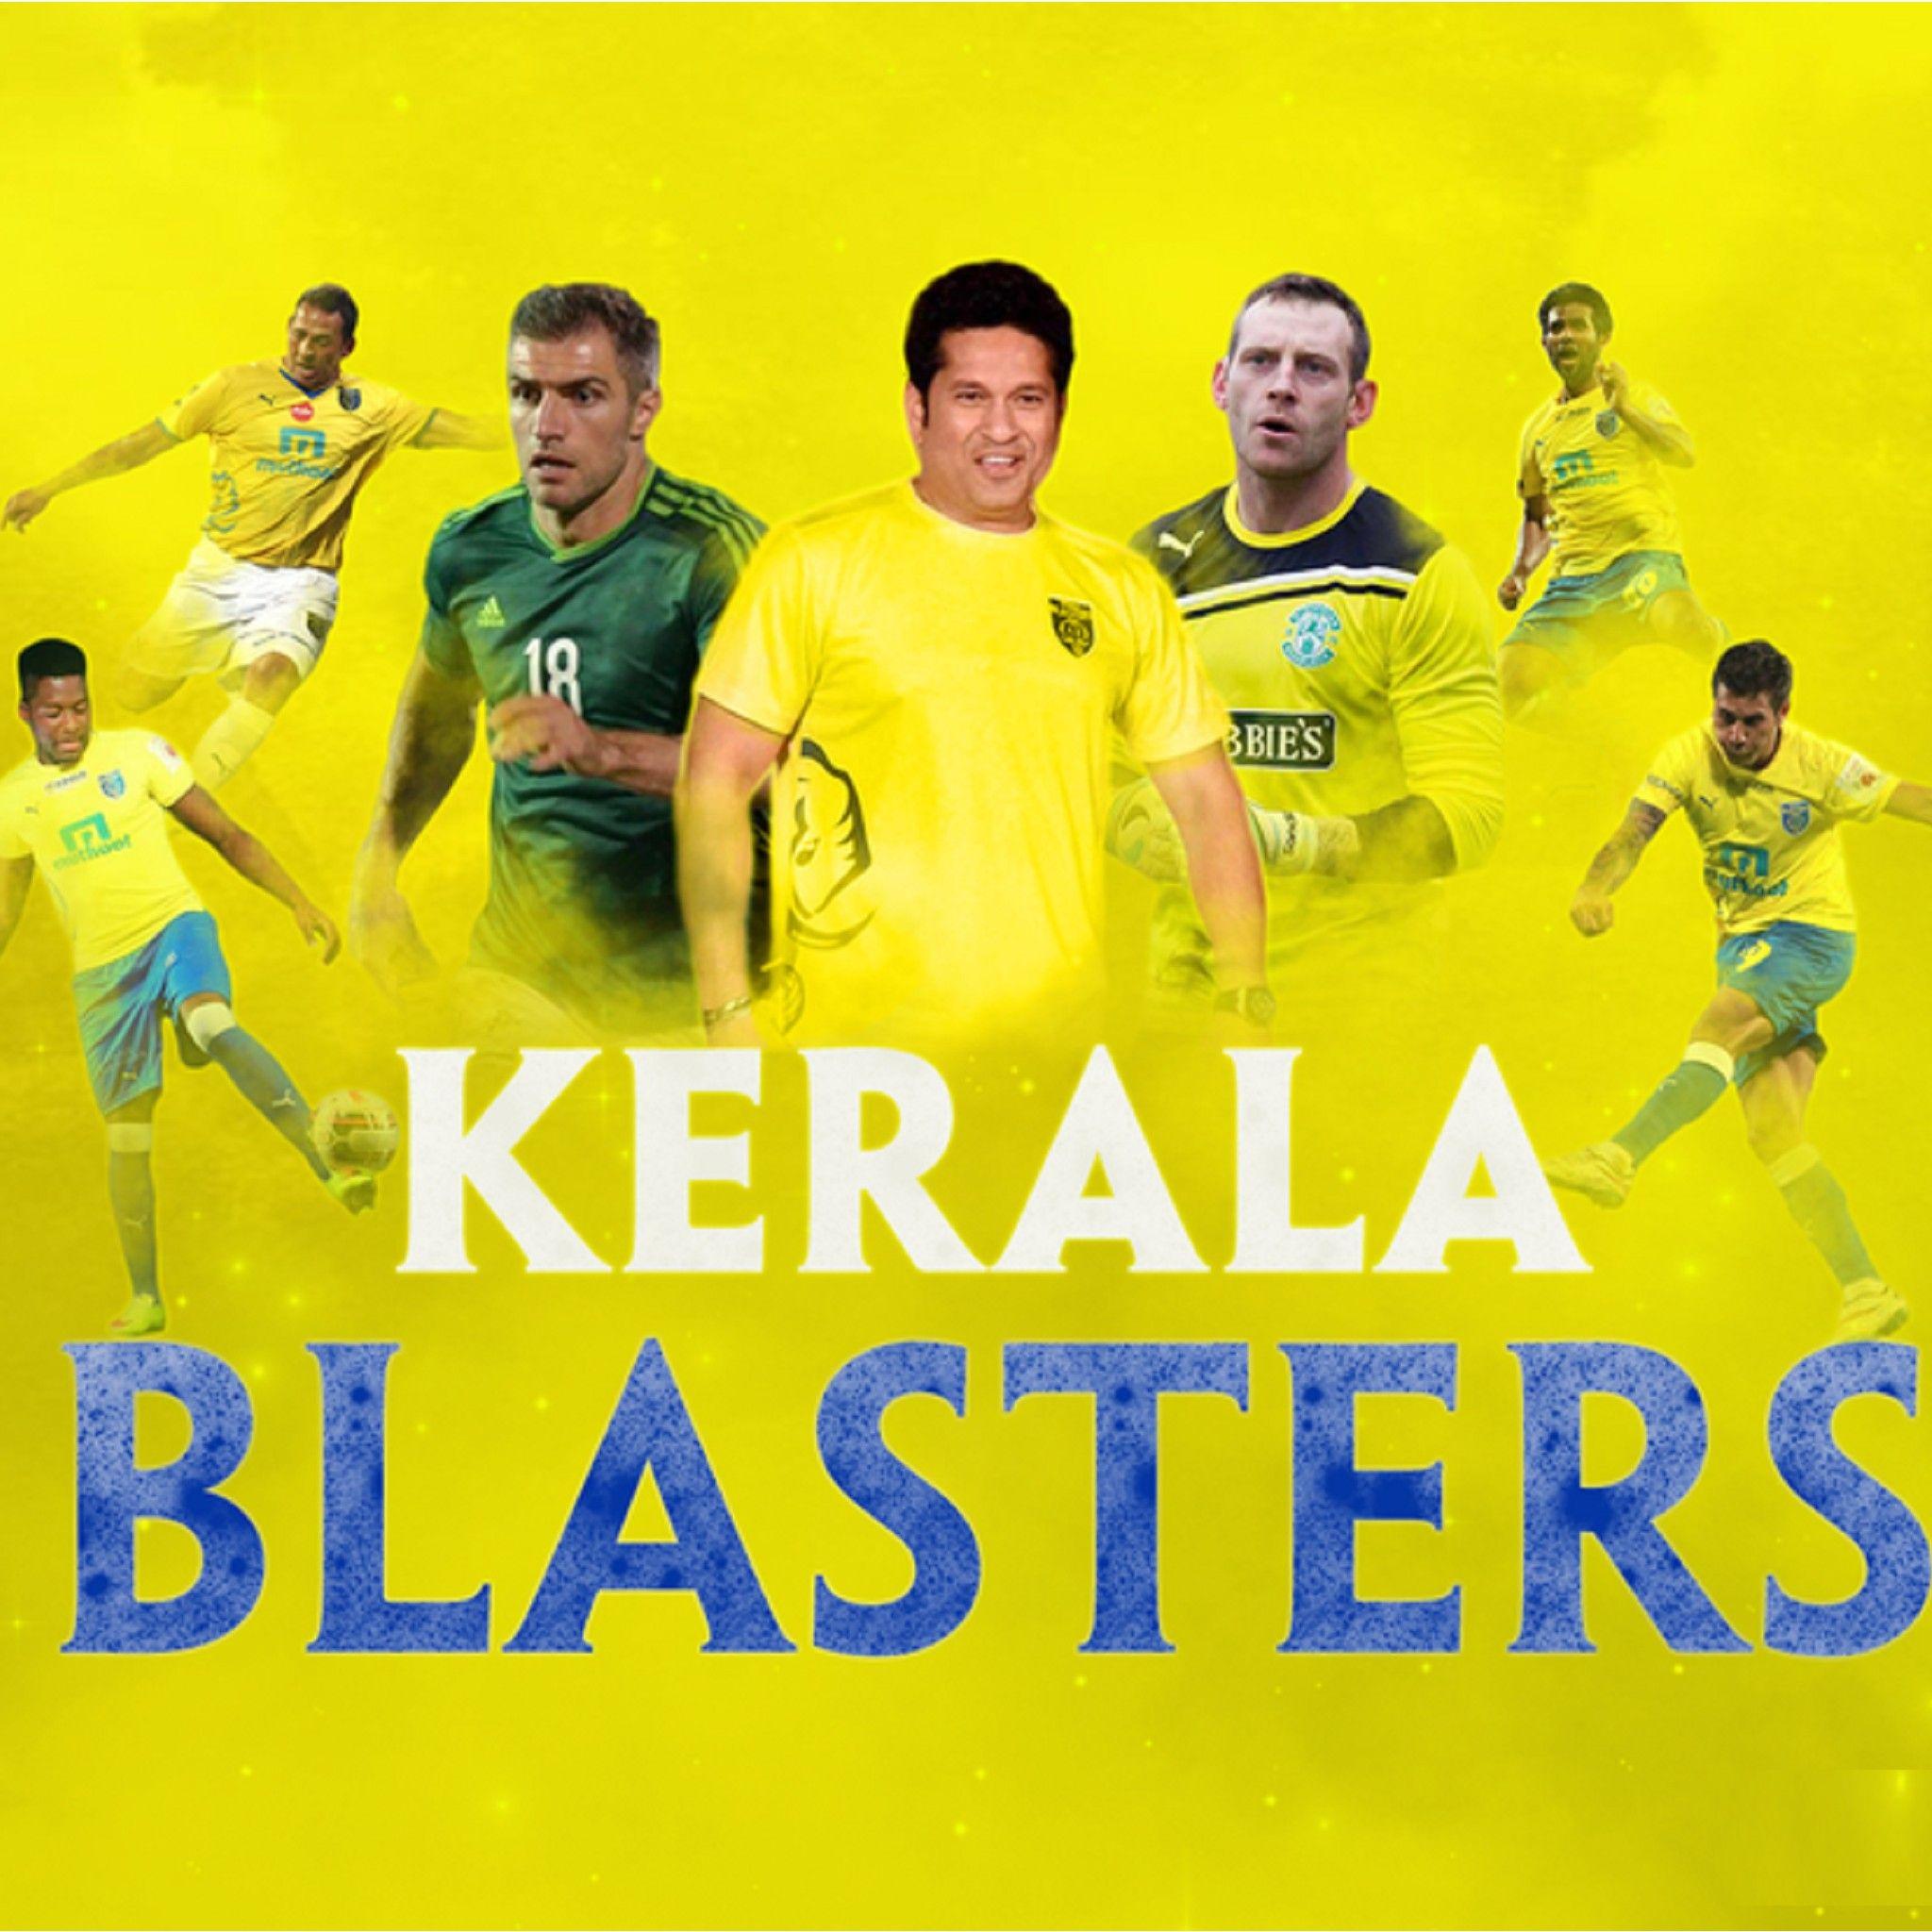 Kerala Blasters Wallpapers - Wallpaper Cave